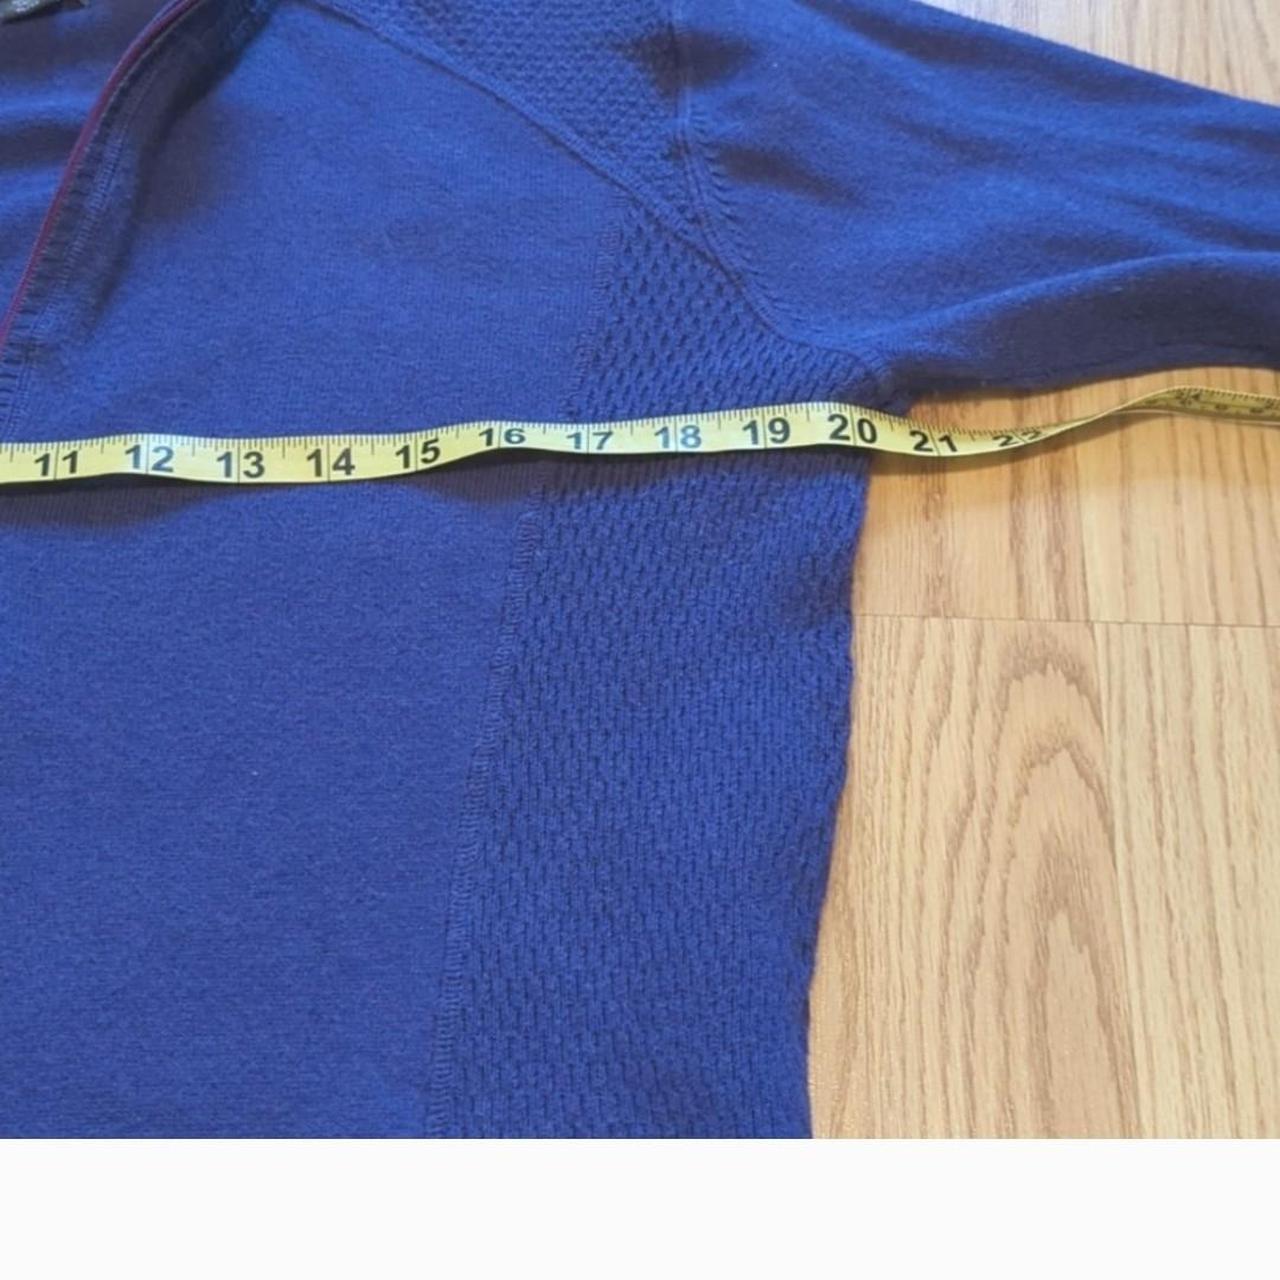 Eddie Bauer Mens 1/4 Zip Up Pullover-vintage XL,... - Depop